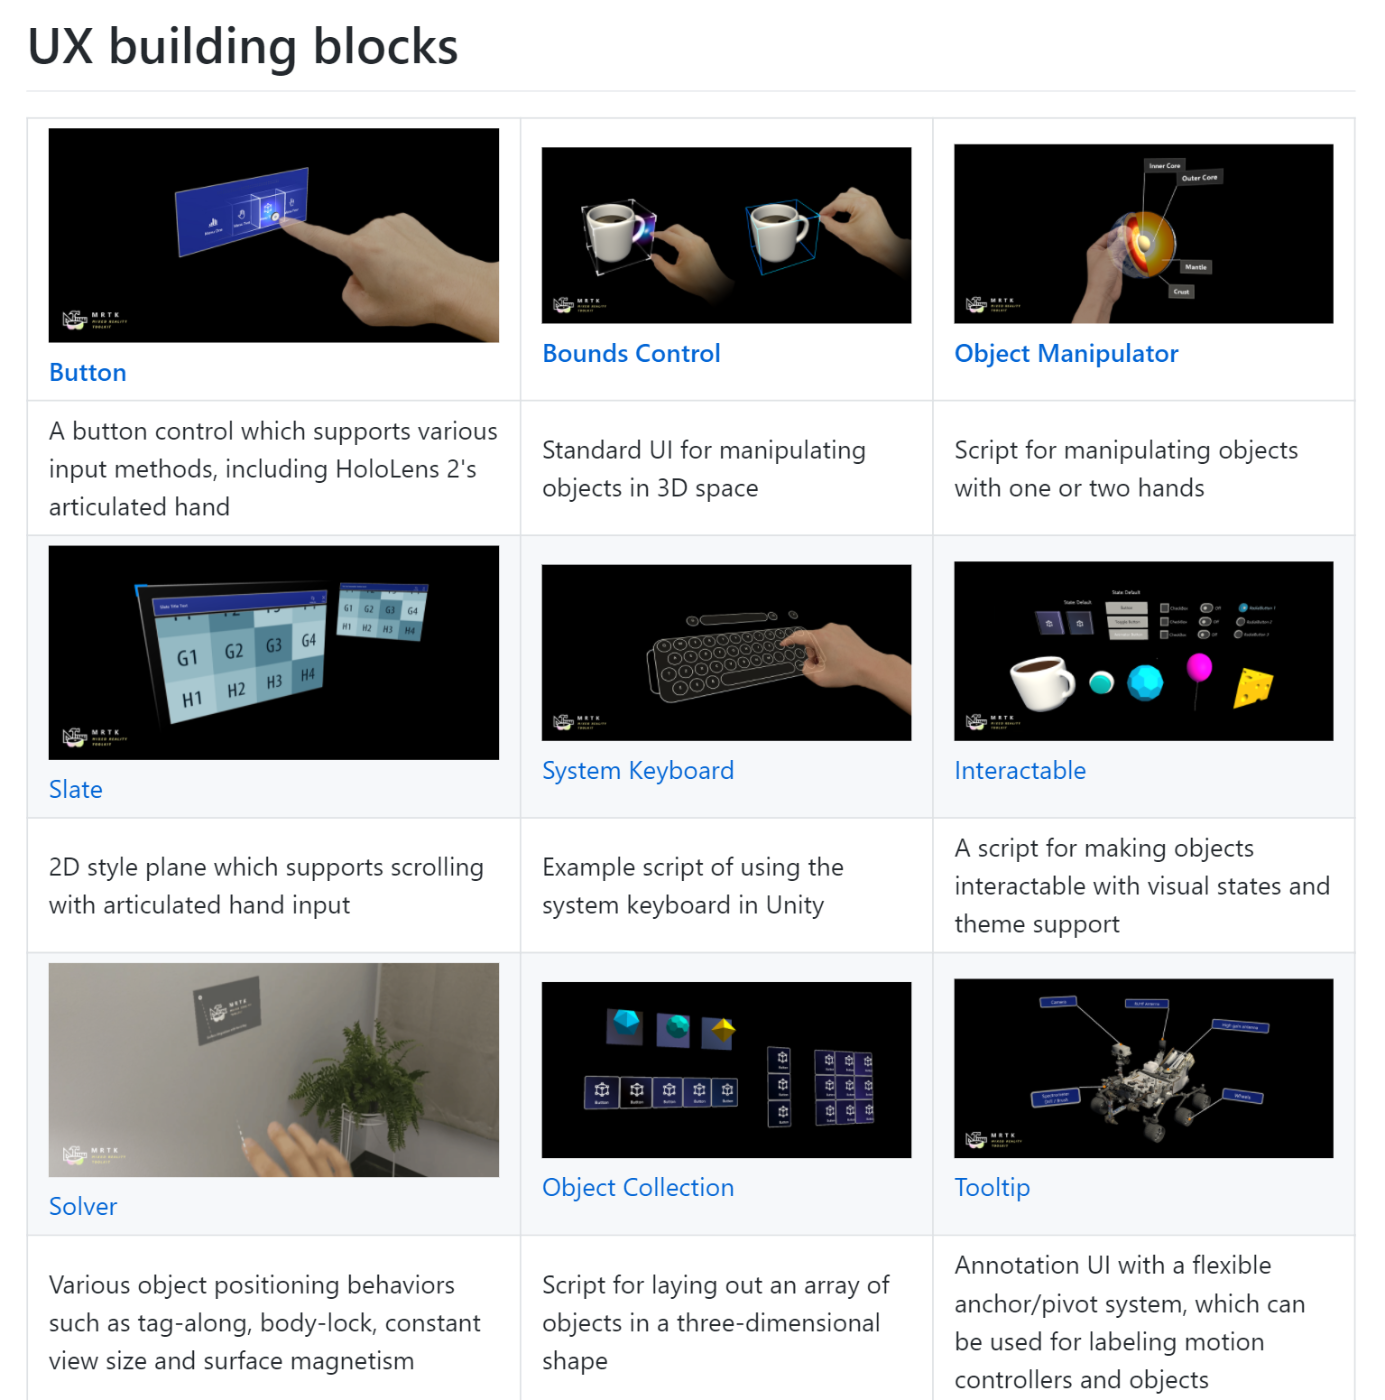 MRTK - UX Building Blocks